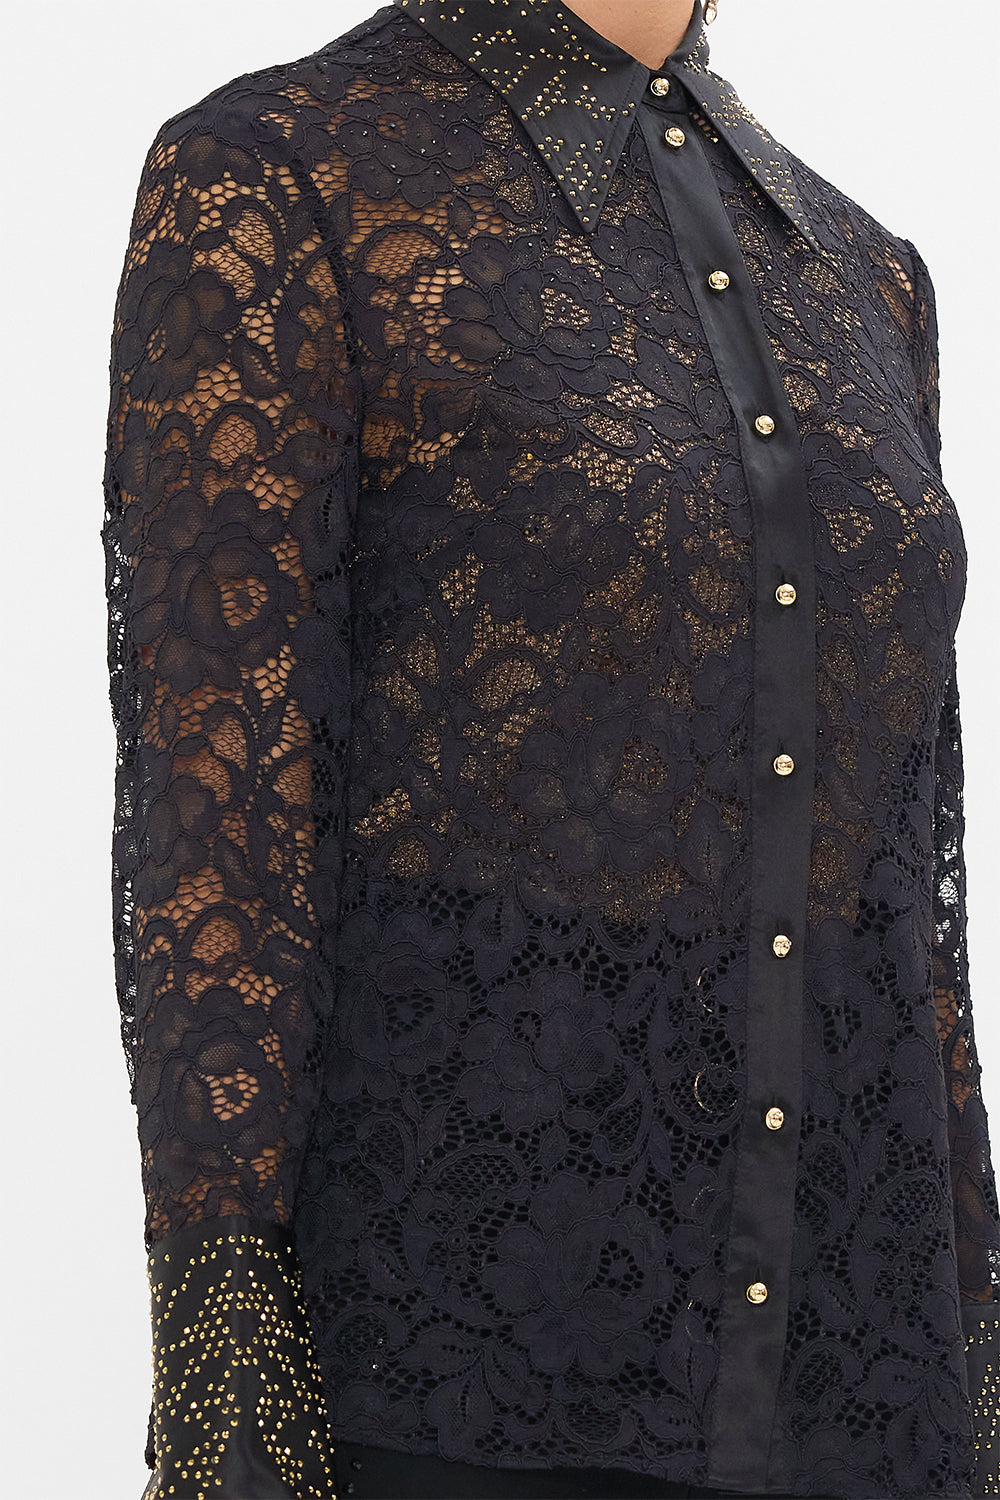 CAMILLA lace shirt in Nouveau Noir print